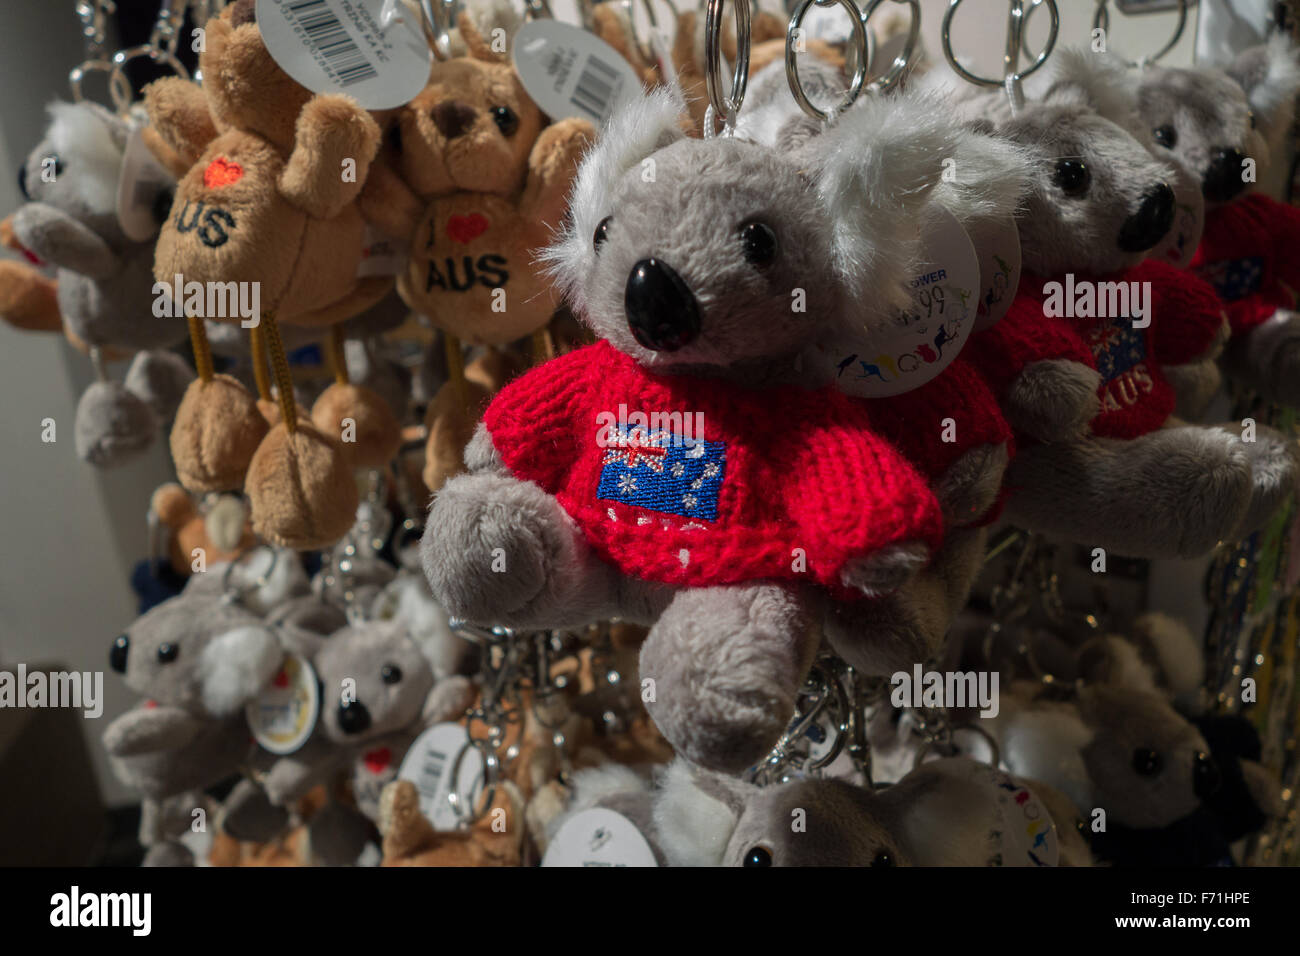 Porte clés souvenir Banque de photographies et d'images à haute résolution  - Alamy